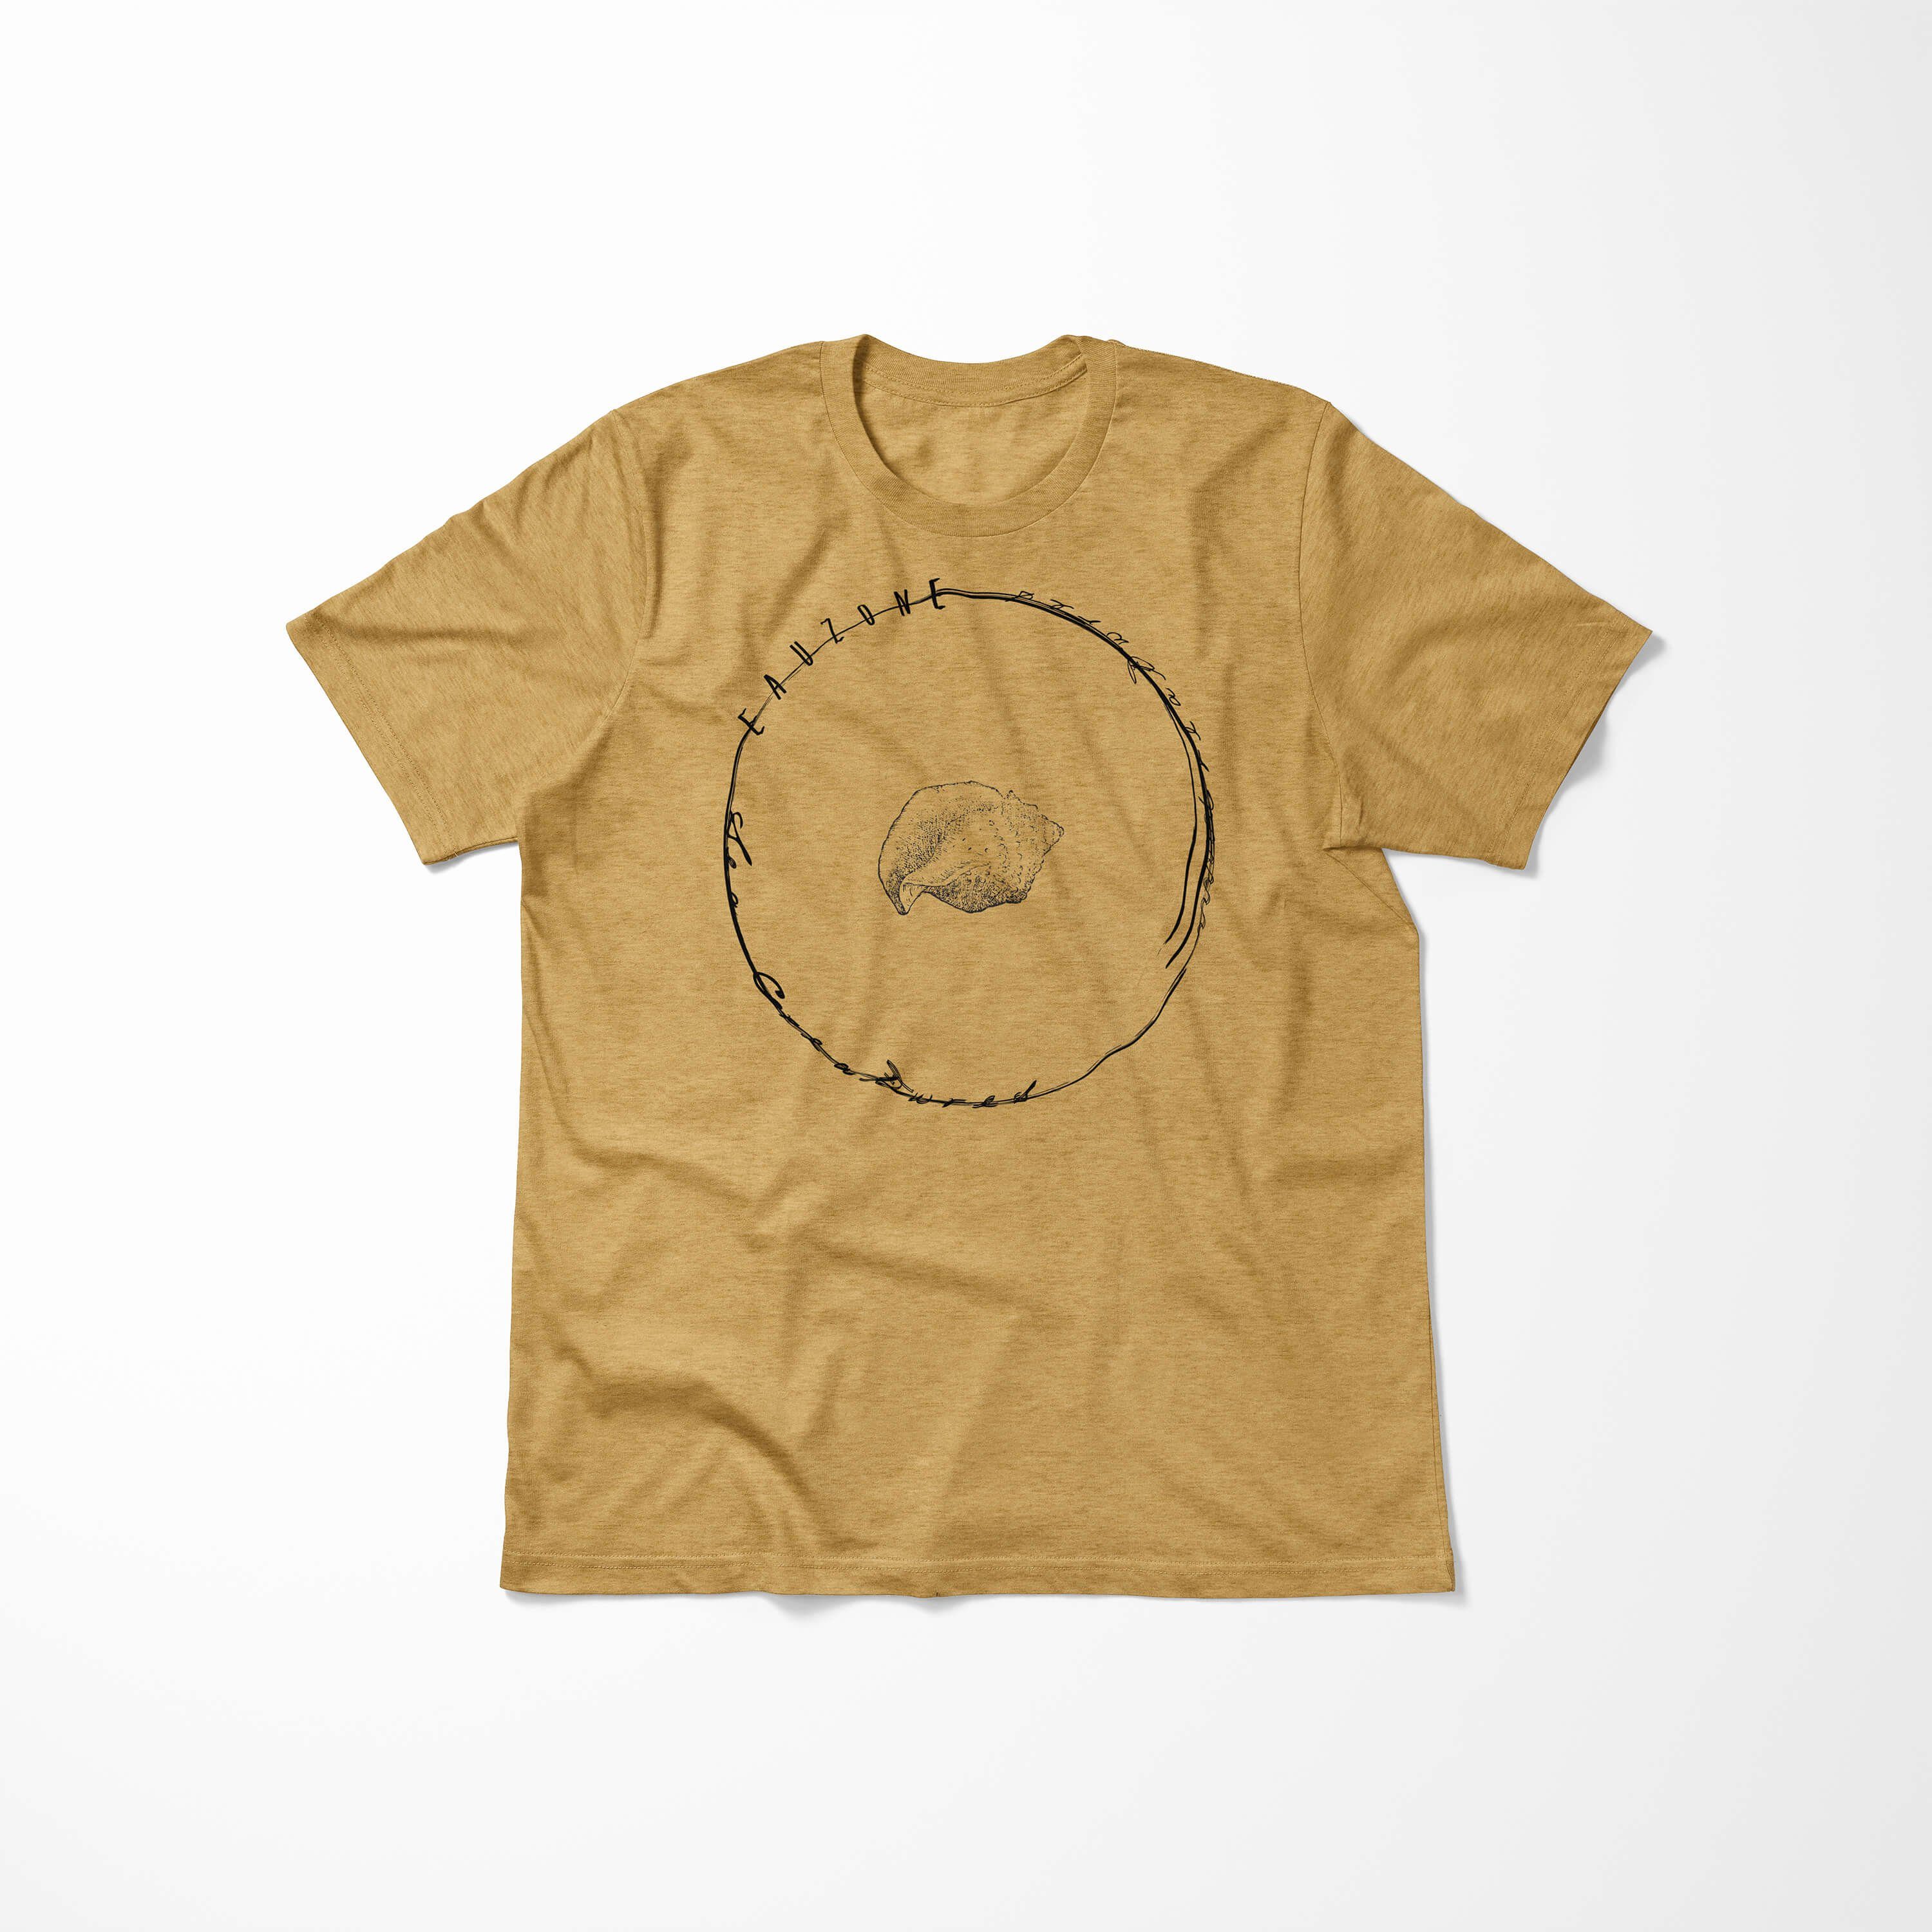 Sea sportlicher Sinus Sea und Struktur / Antique Serie: Fische Schnitt Gold Tiefsee 002 T-Shirt feine Art T-Shirt Creatures, -